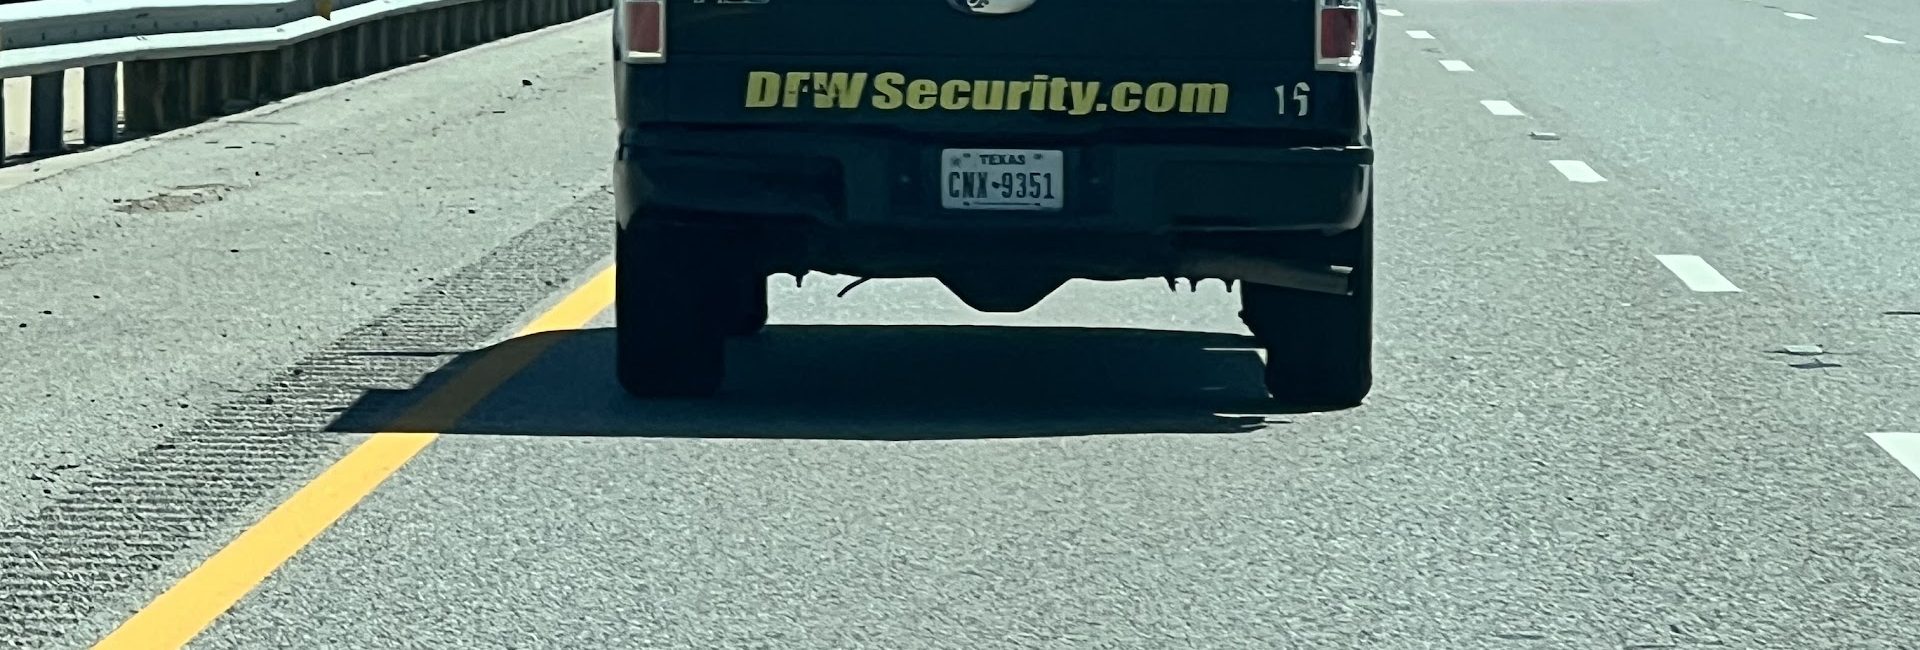 DFW Security 2